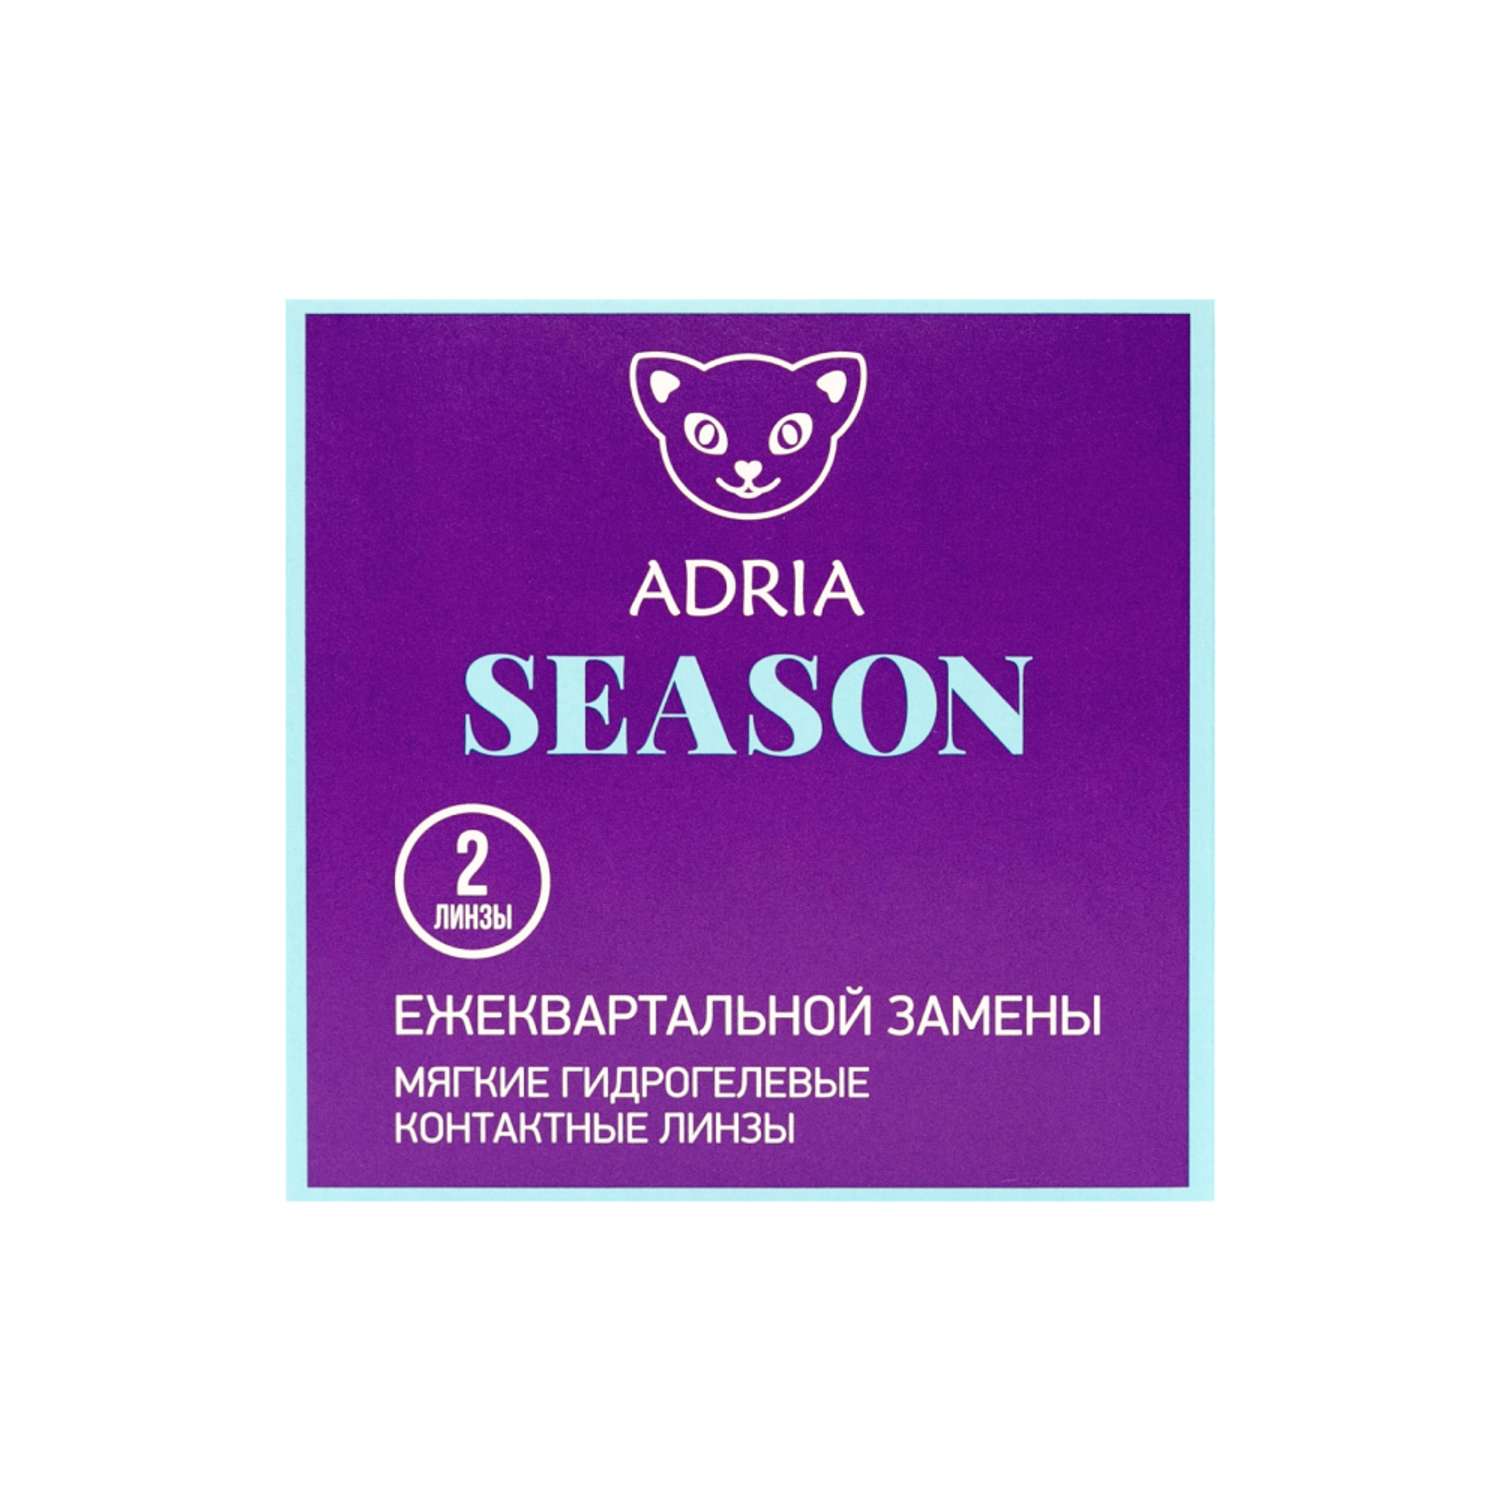 Контактные линзы ADRIA Season 2 линзы R 8.6 -2.50 - фото 6